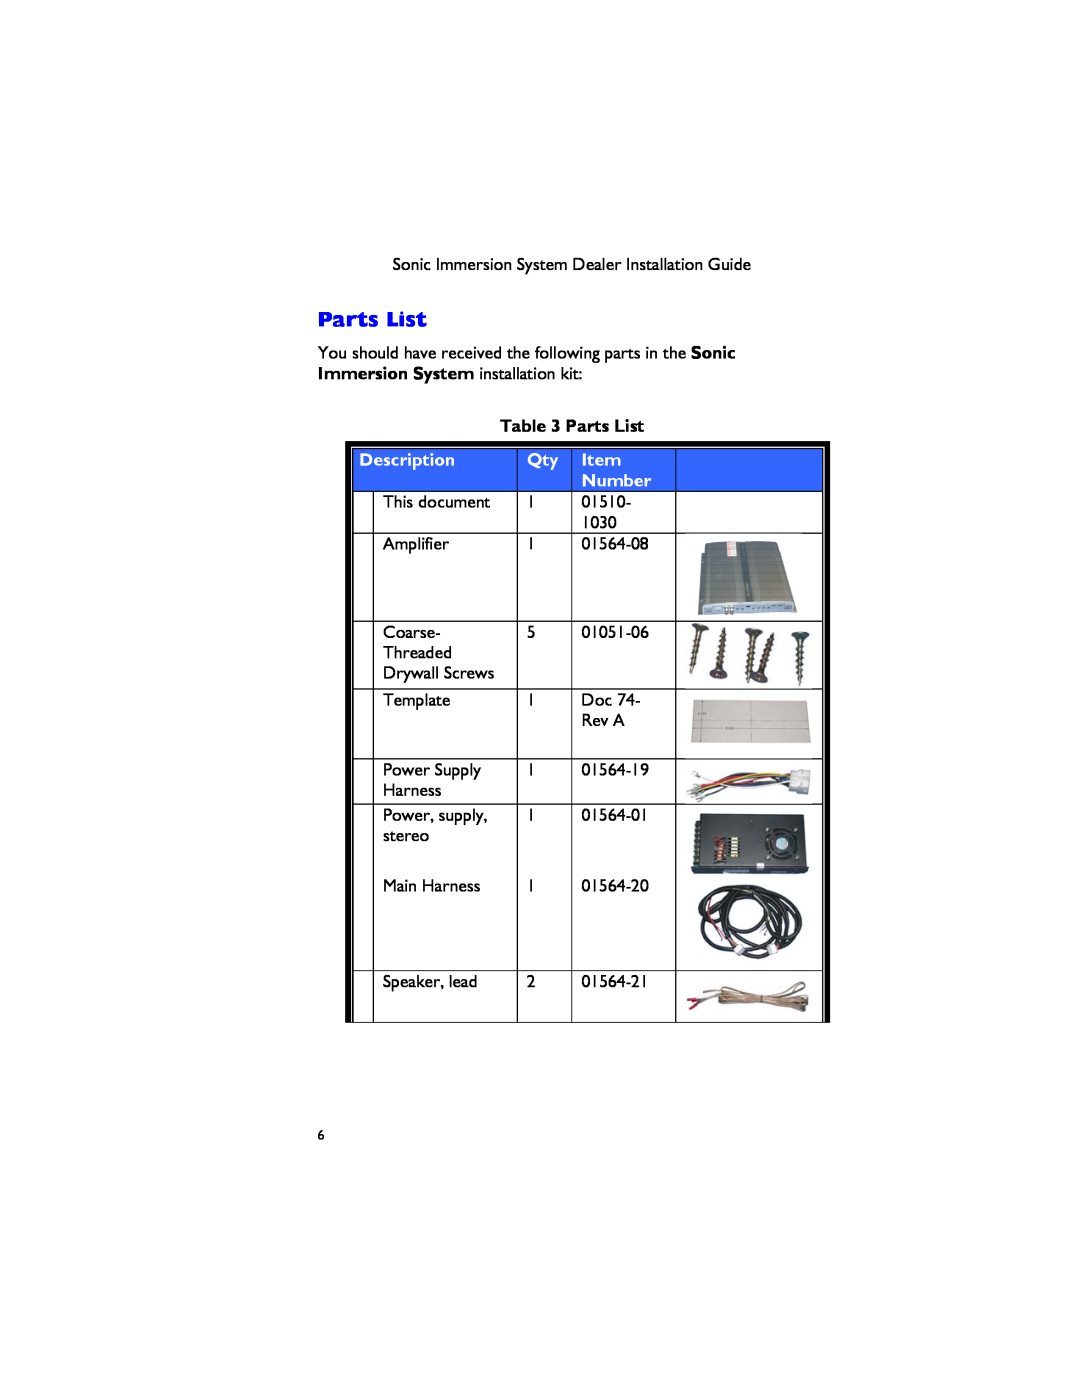 Dimension One Spas 01510-1030 manual Parts List, Description, Number 